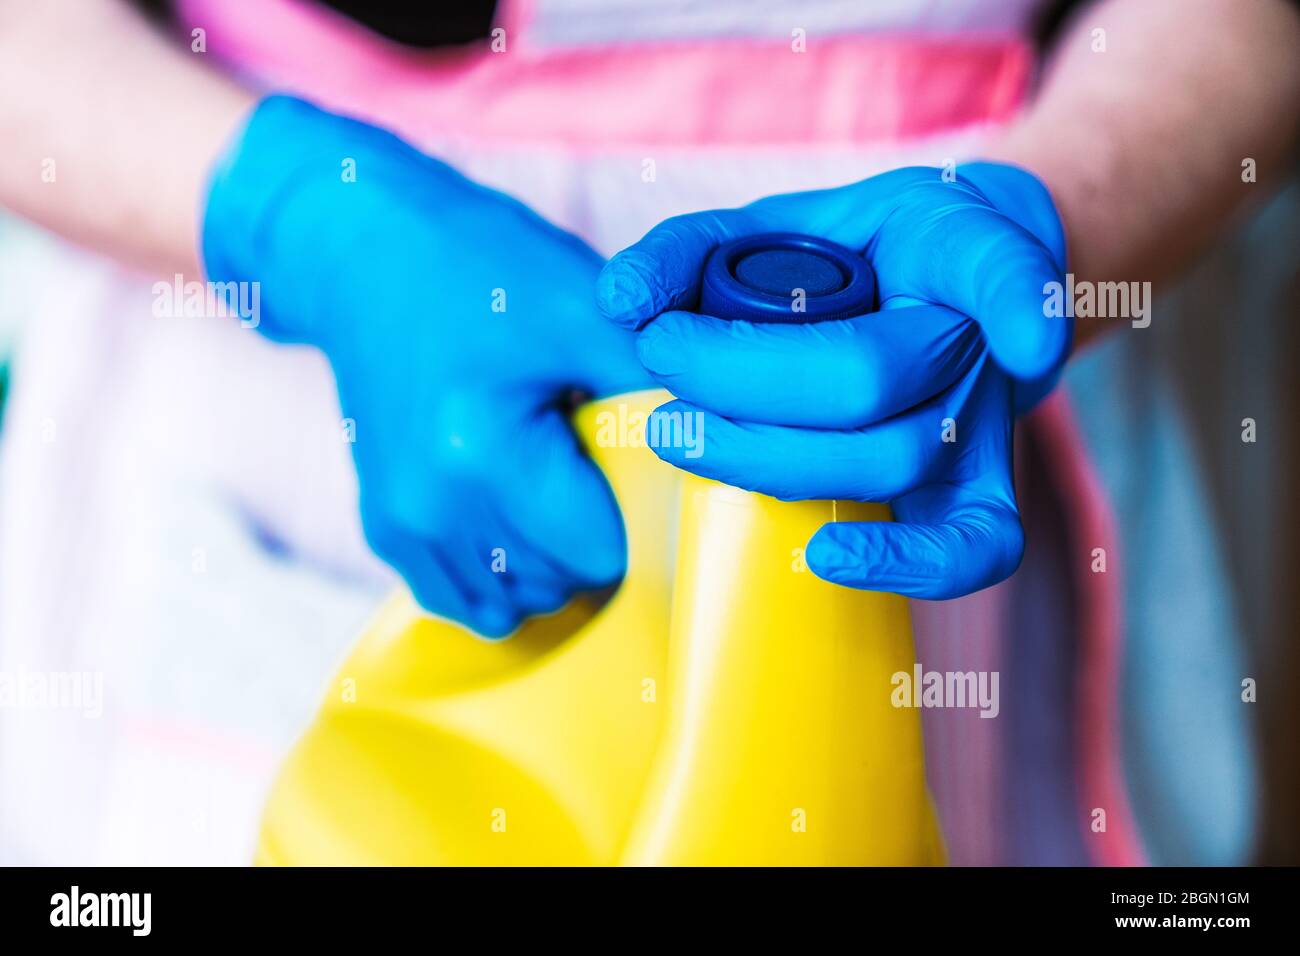 Casalinga con guanti in lattice blu e grembiule che apre una bottiglia gialla di candeggina. Foto Stock